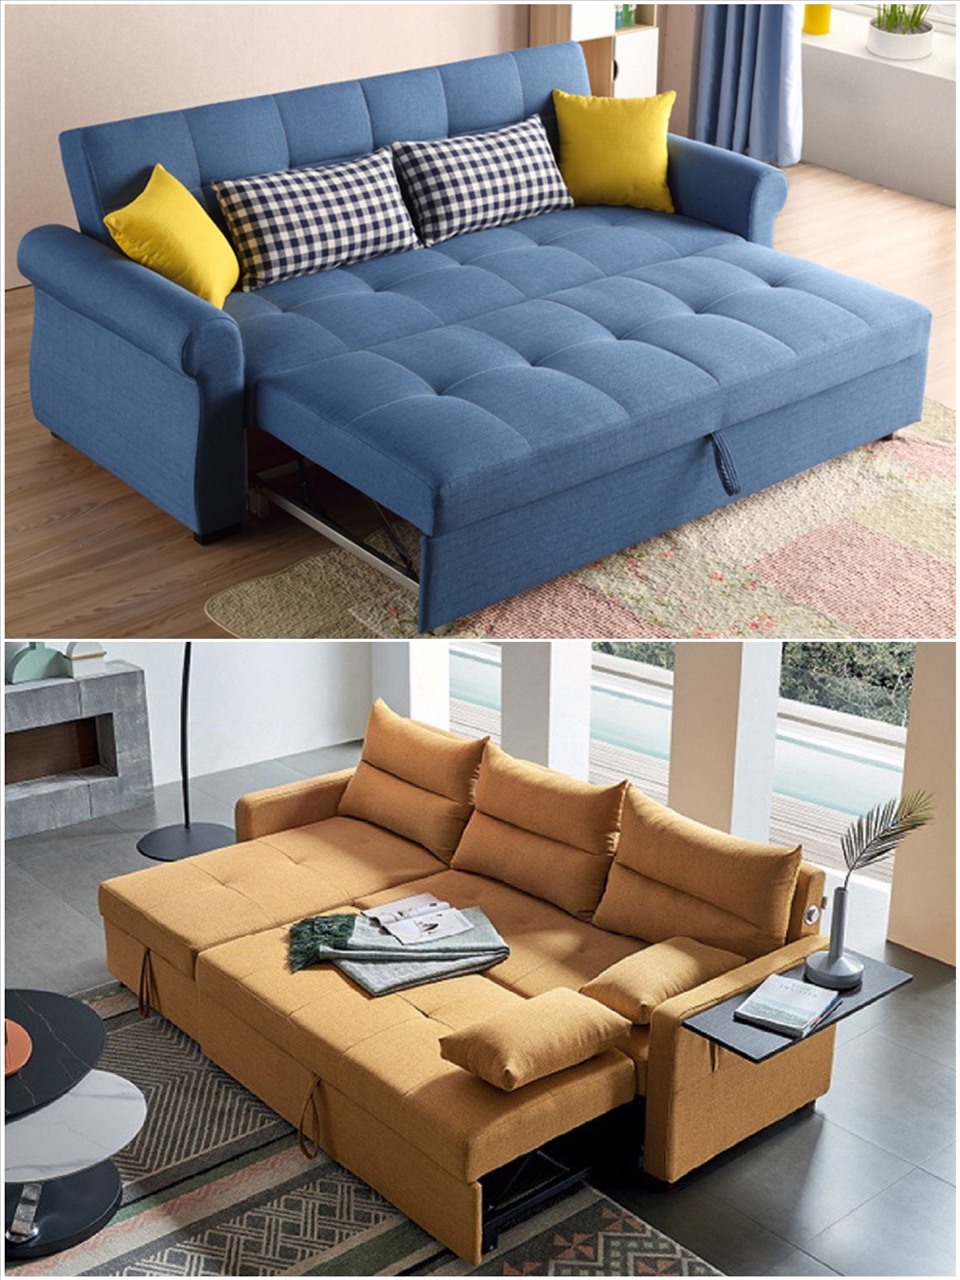 Sofa giường - giải pháp tuyệt vời cho ngôi nhà hiện đại